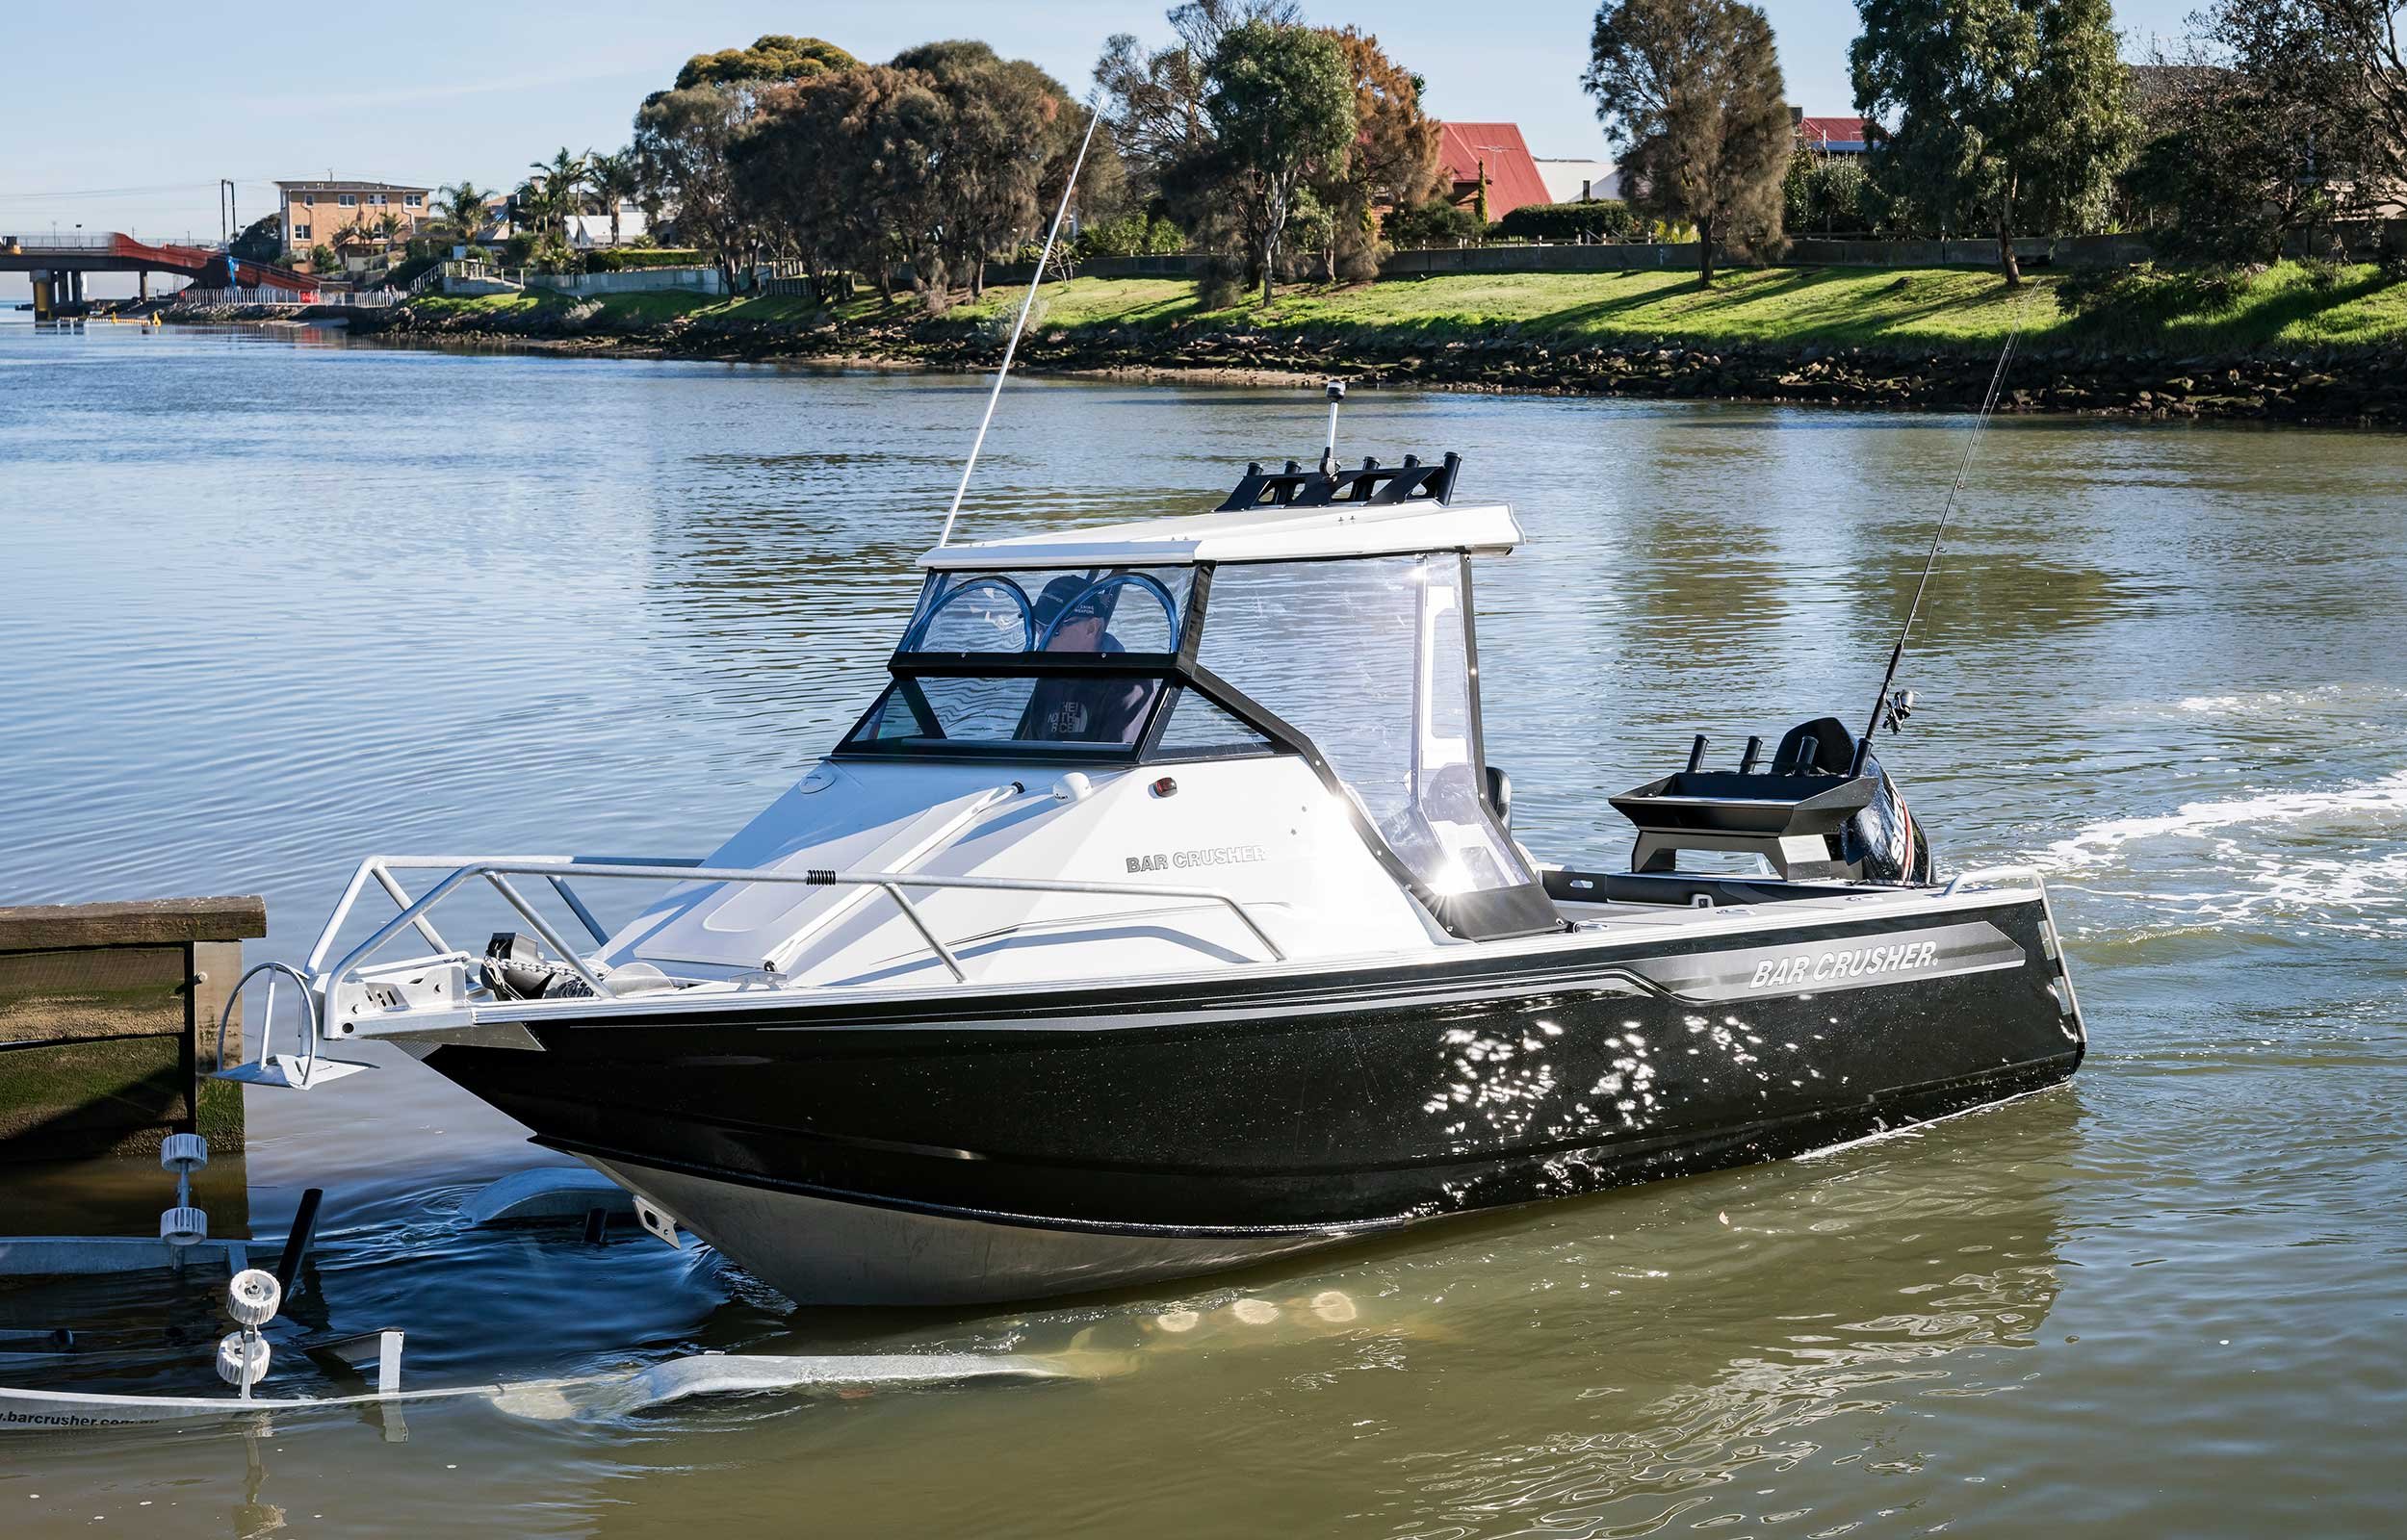 models-bar-crusher-670c-plate-aluminium-fishing-boat-2019-web-6